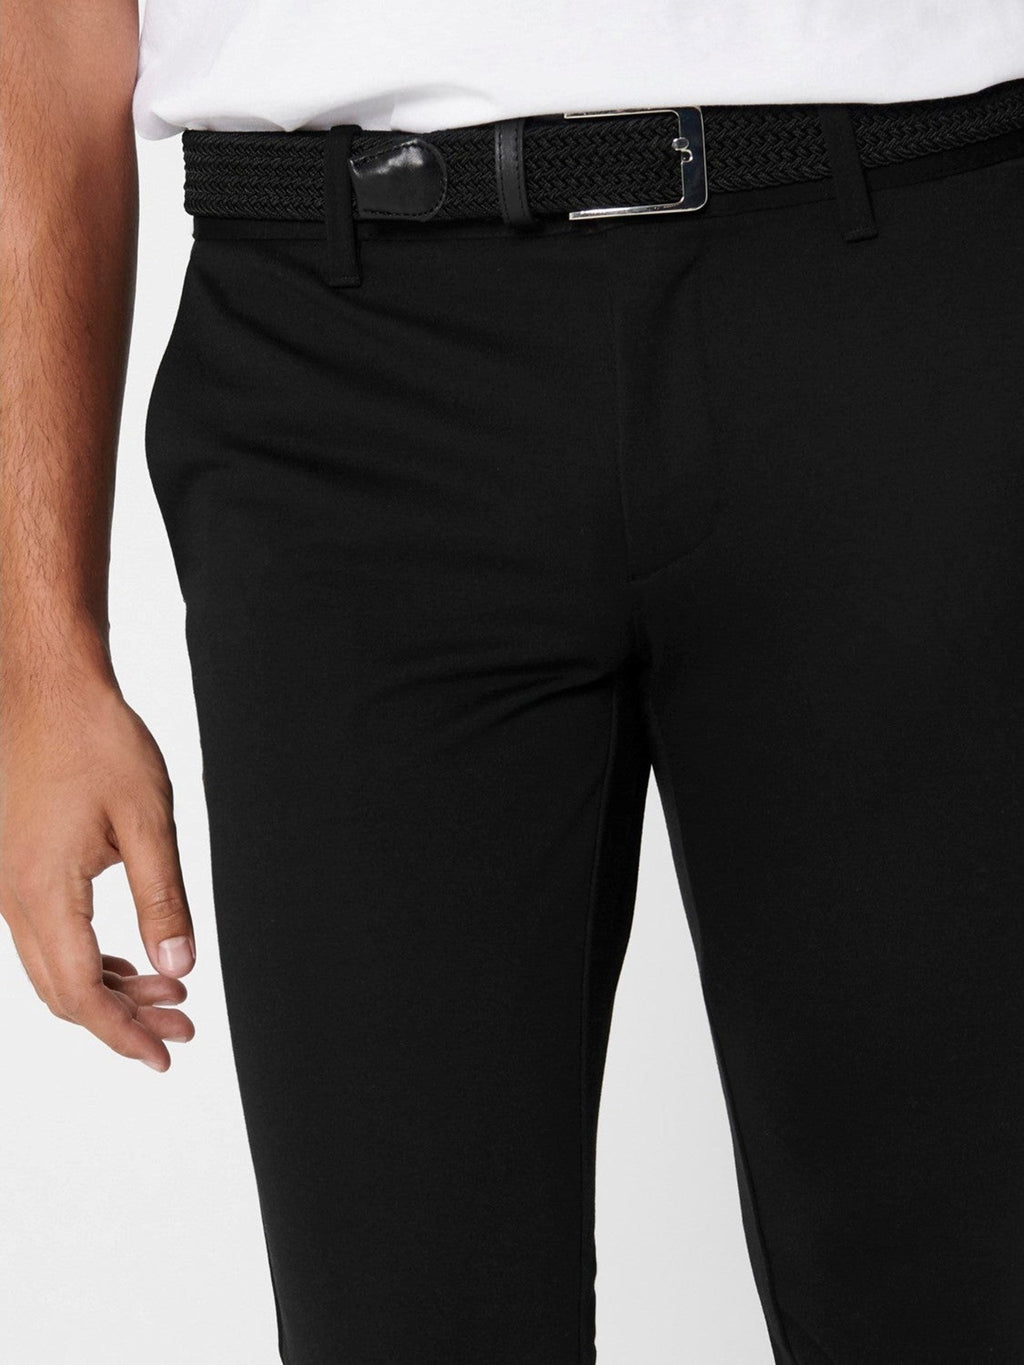 Označite hlače - crne (rastezljive hlače)